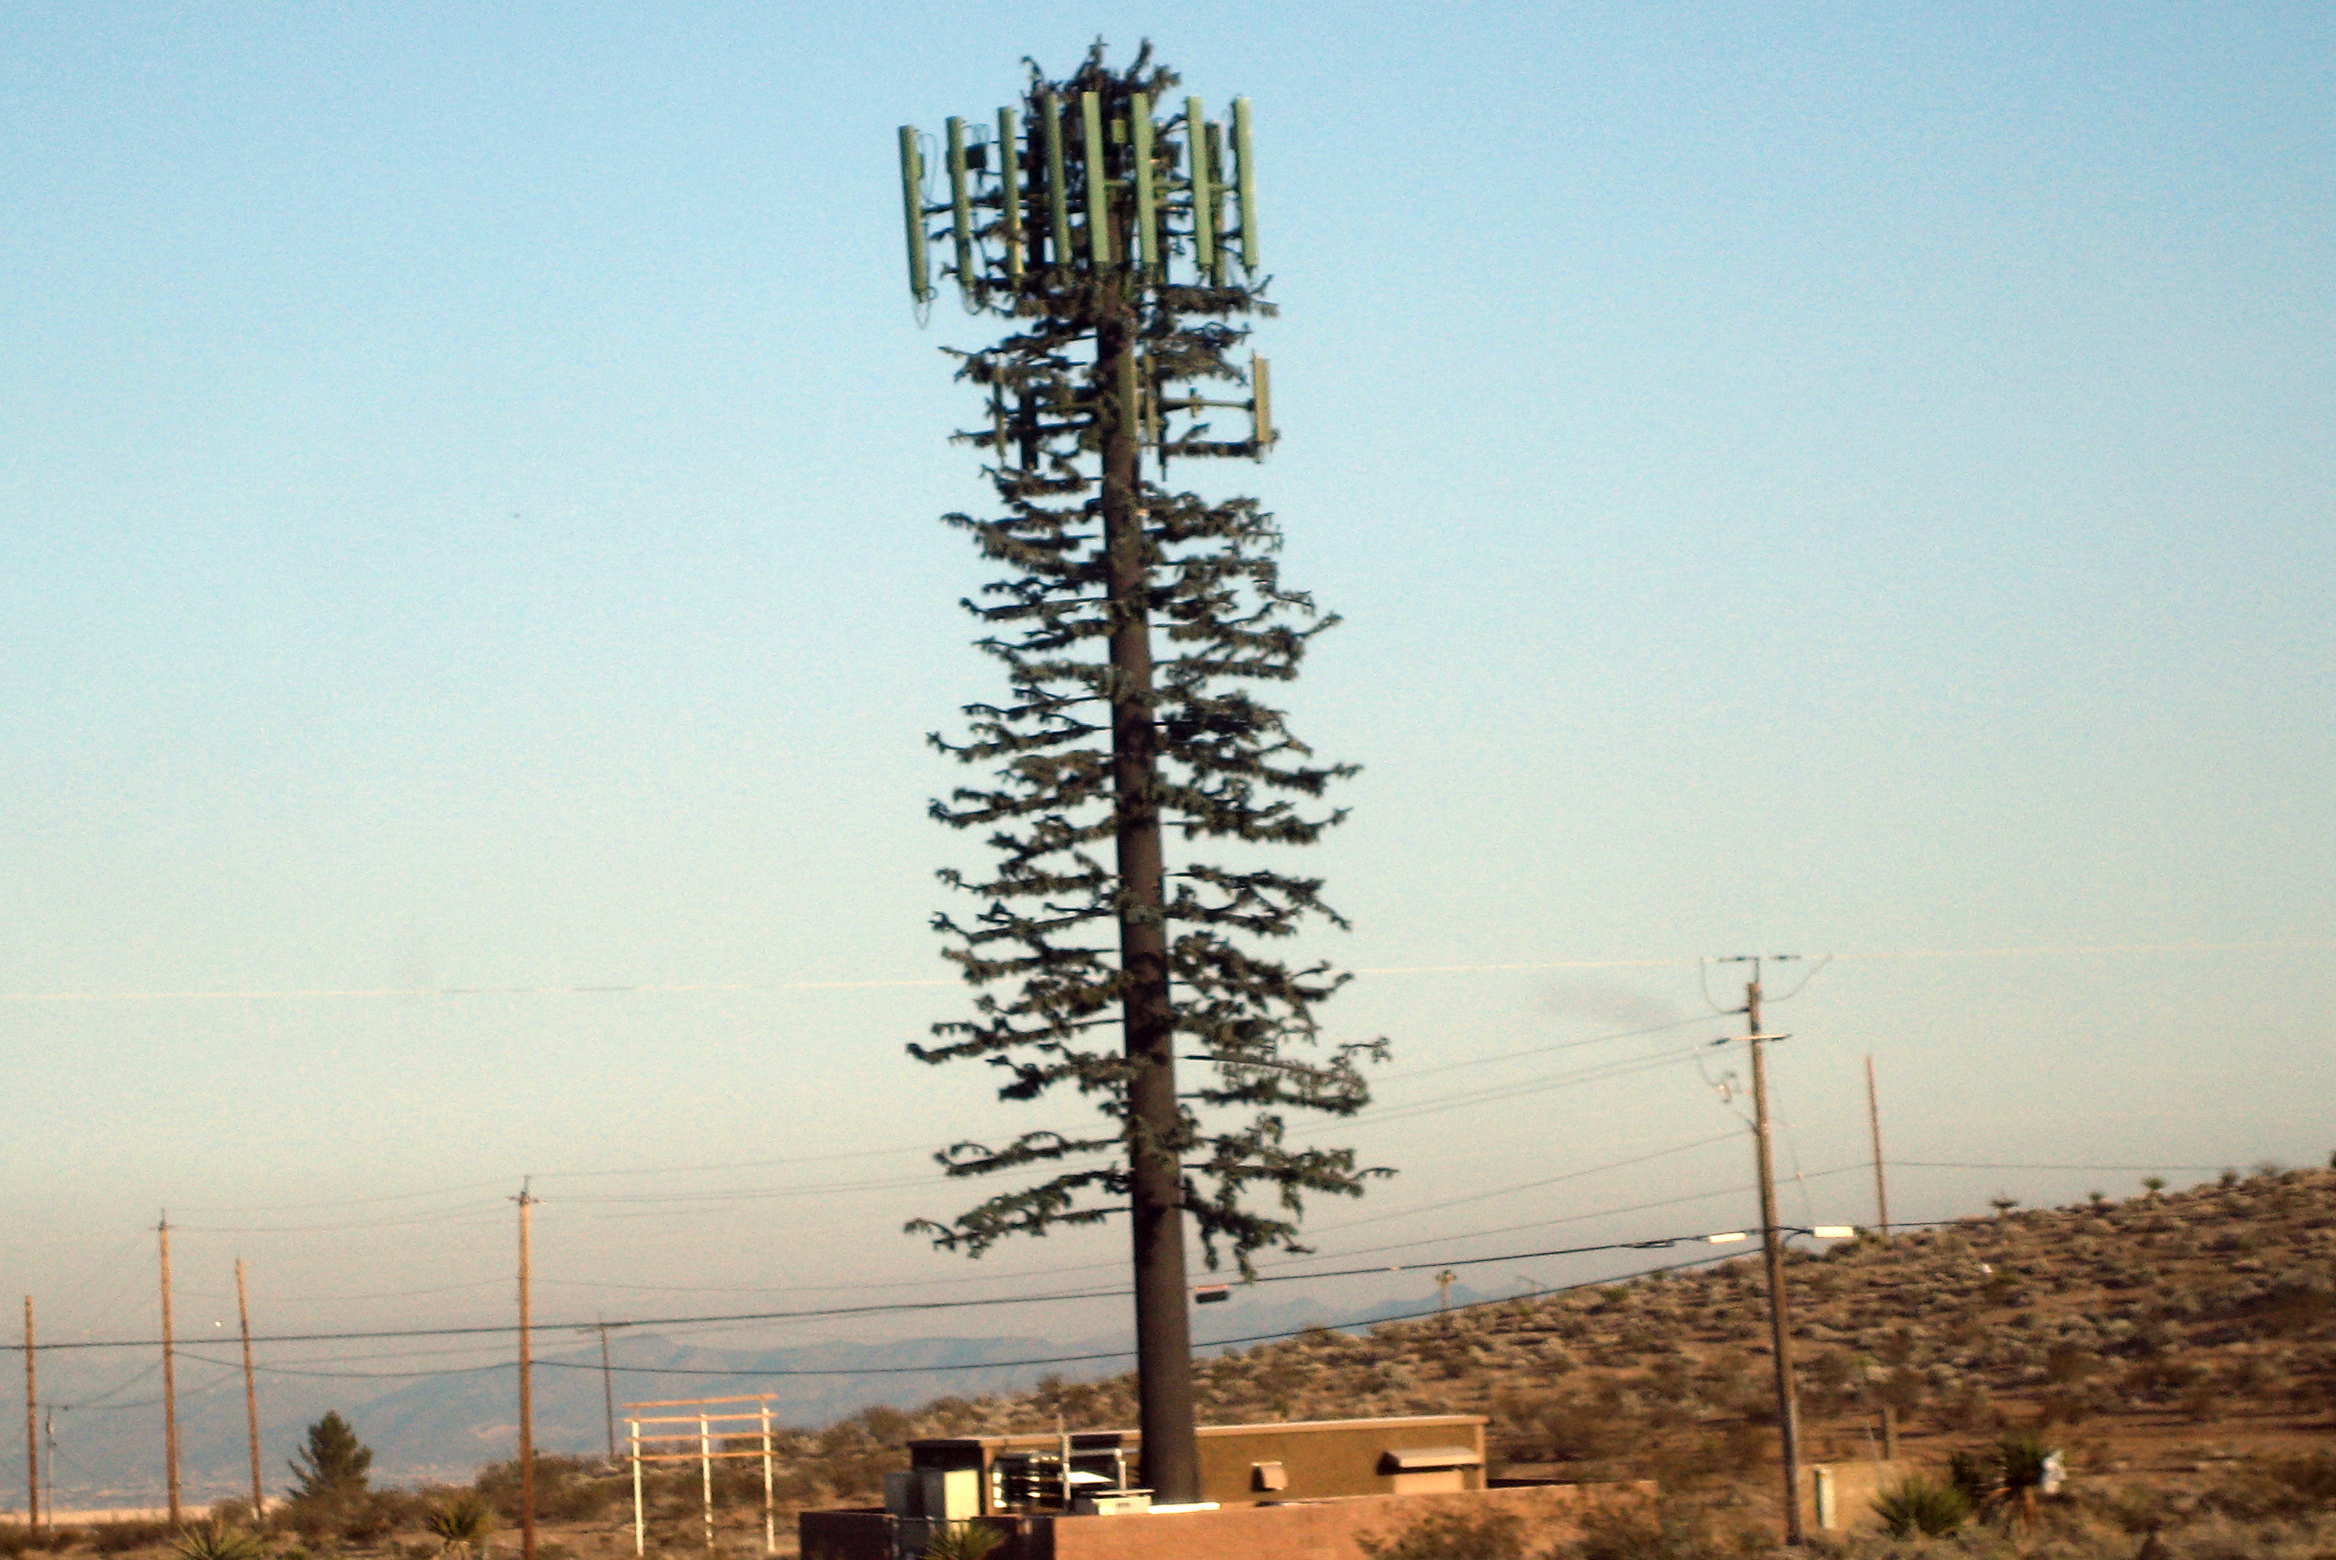 Imagen de una torre de telefonía celular con mucha antena